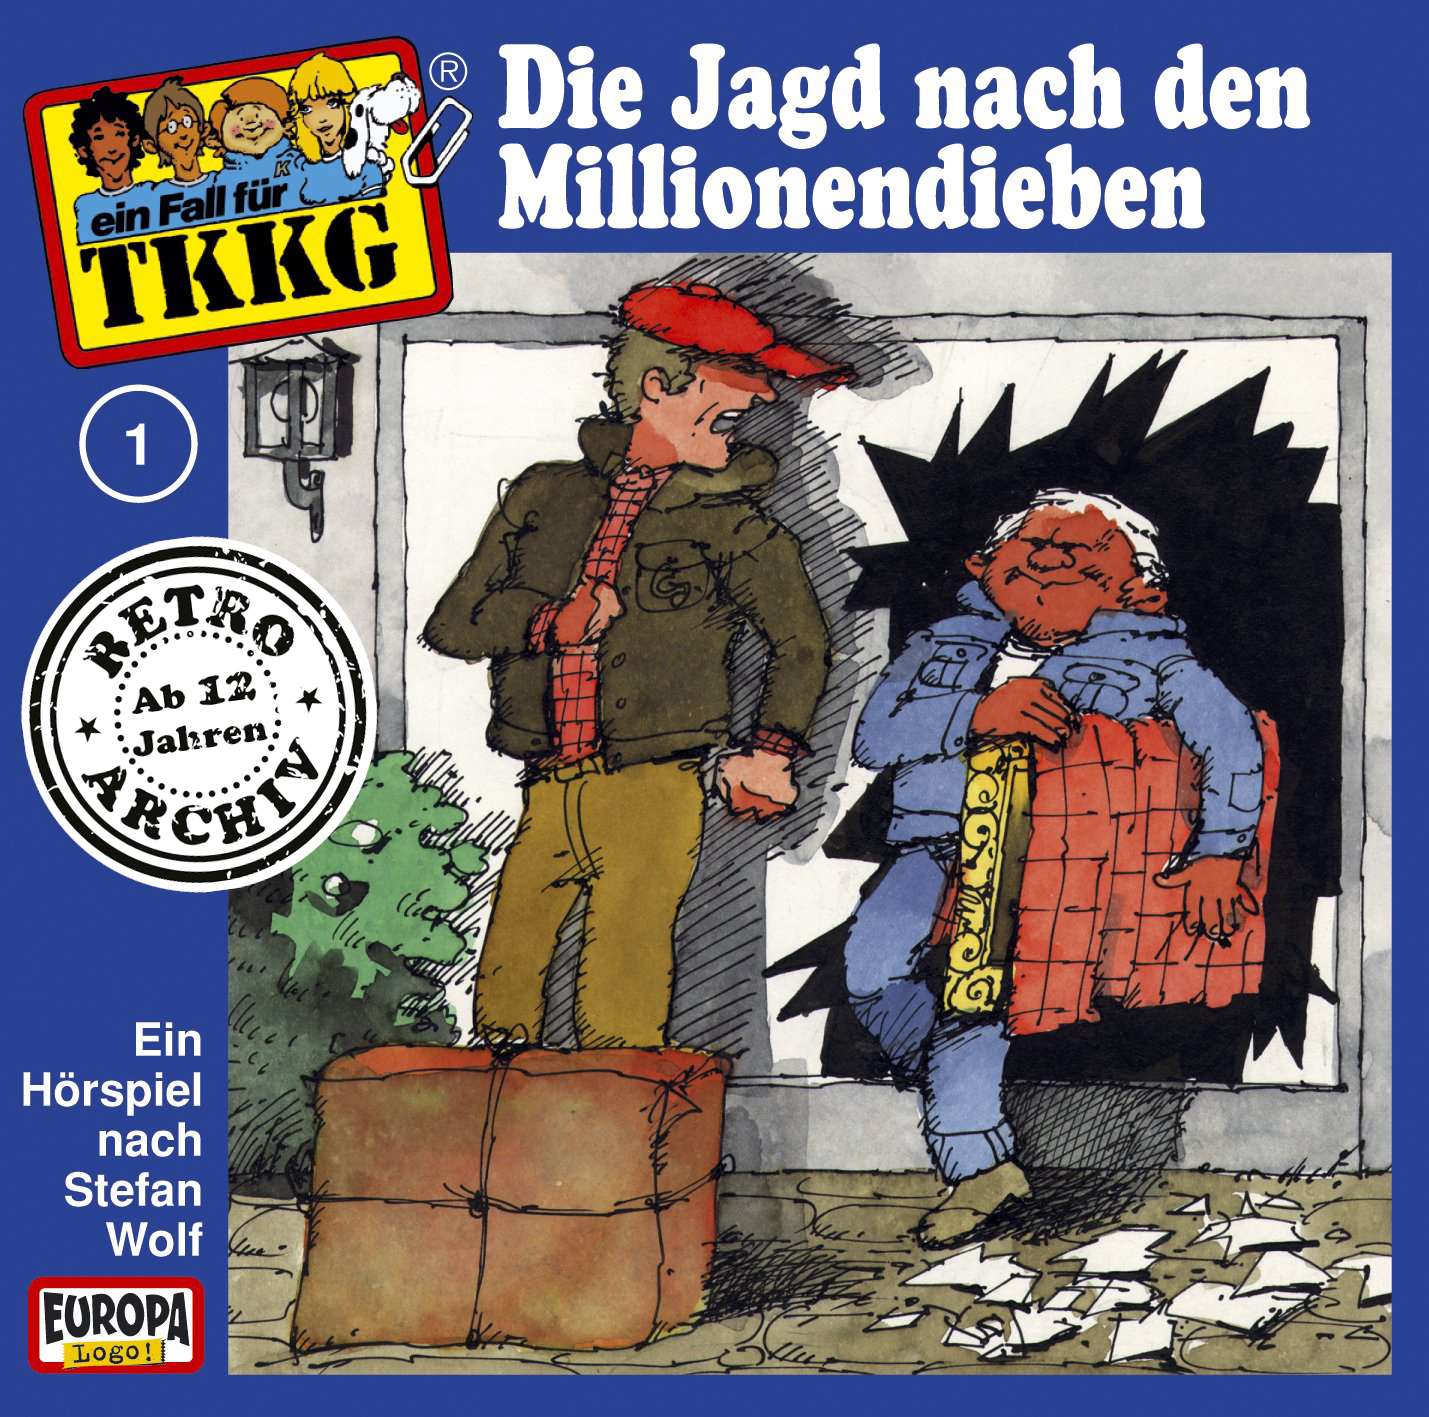 TKKG Retro-Archiv: Die Jagd nach den Millionendieben